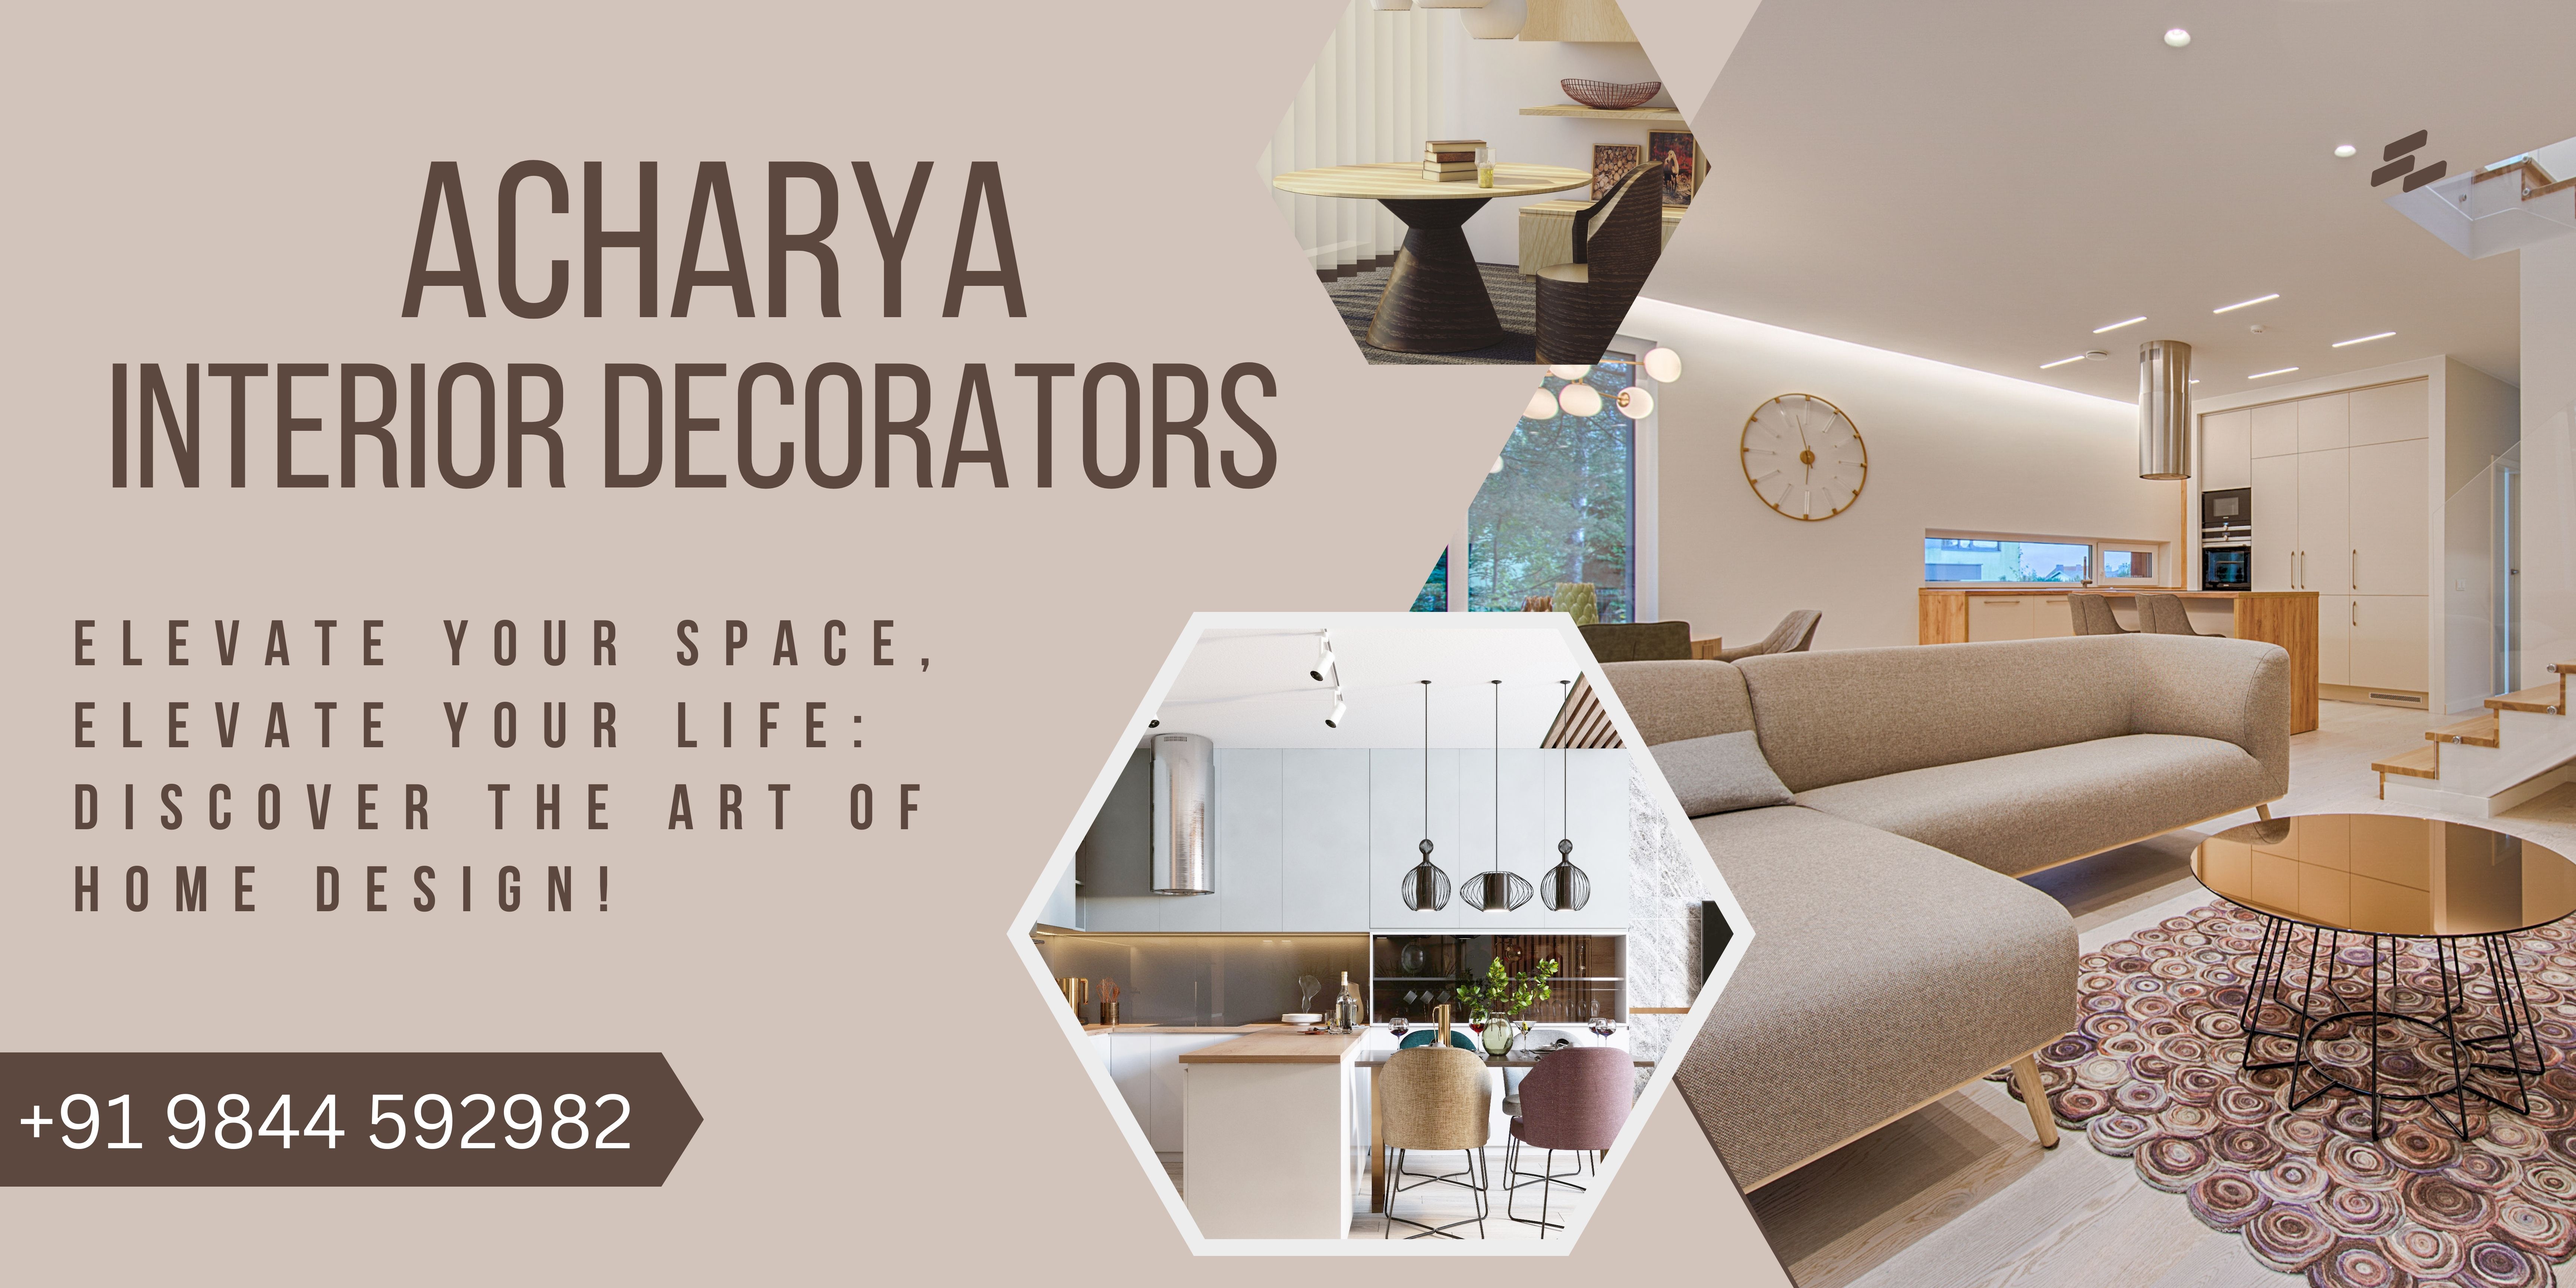 Acharya Interior Decorators - 